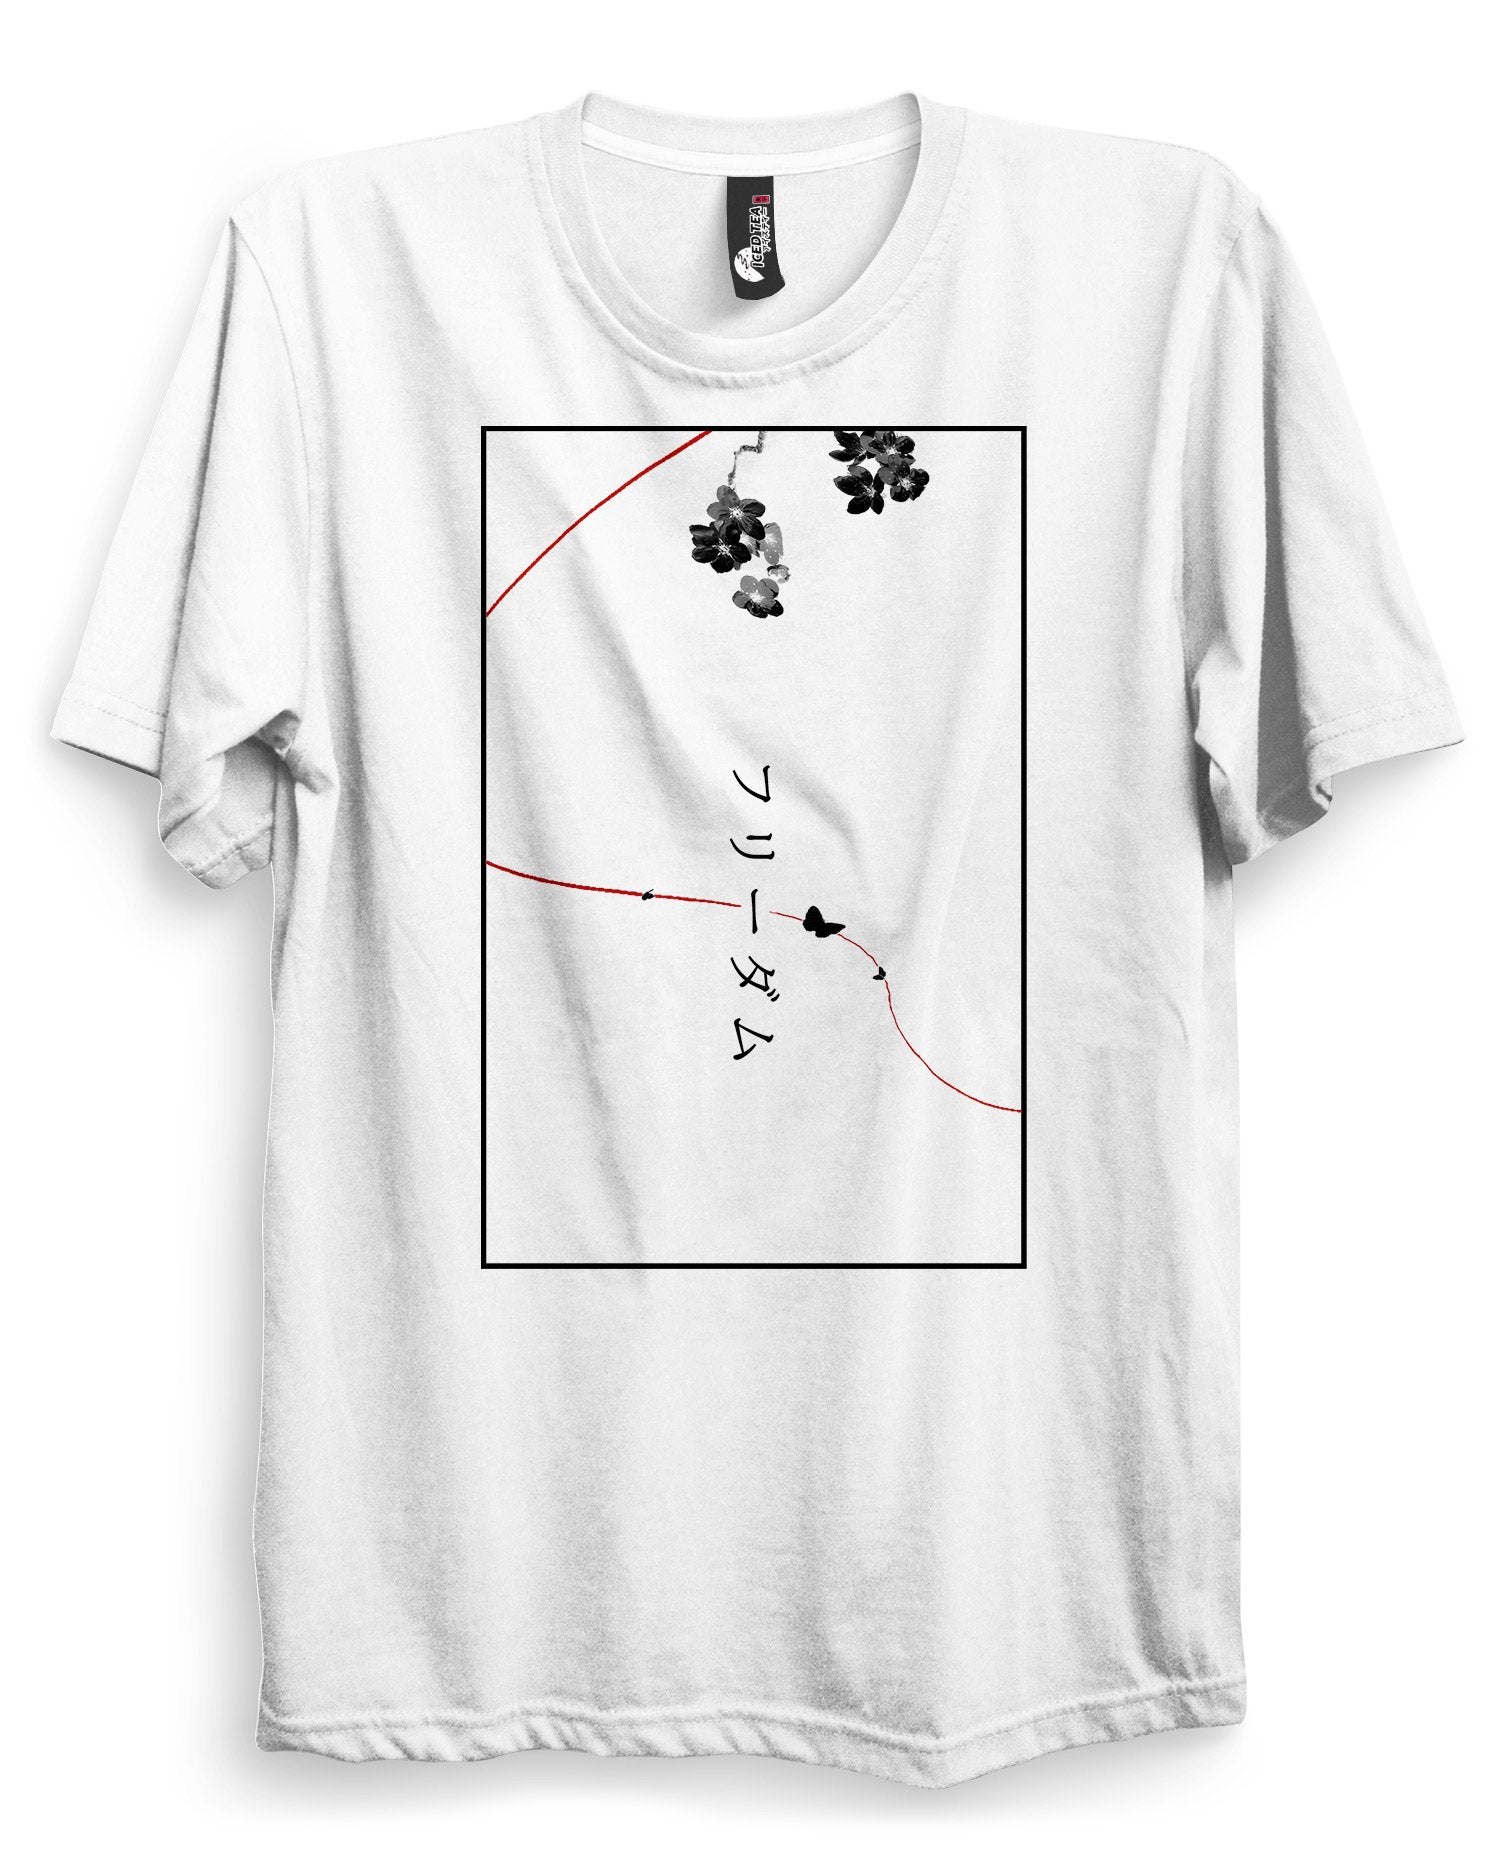 Otaku Nerd Anime Minimalist Gift Idea' Men's T-Shirt | Spreadshirt